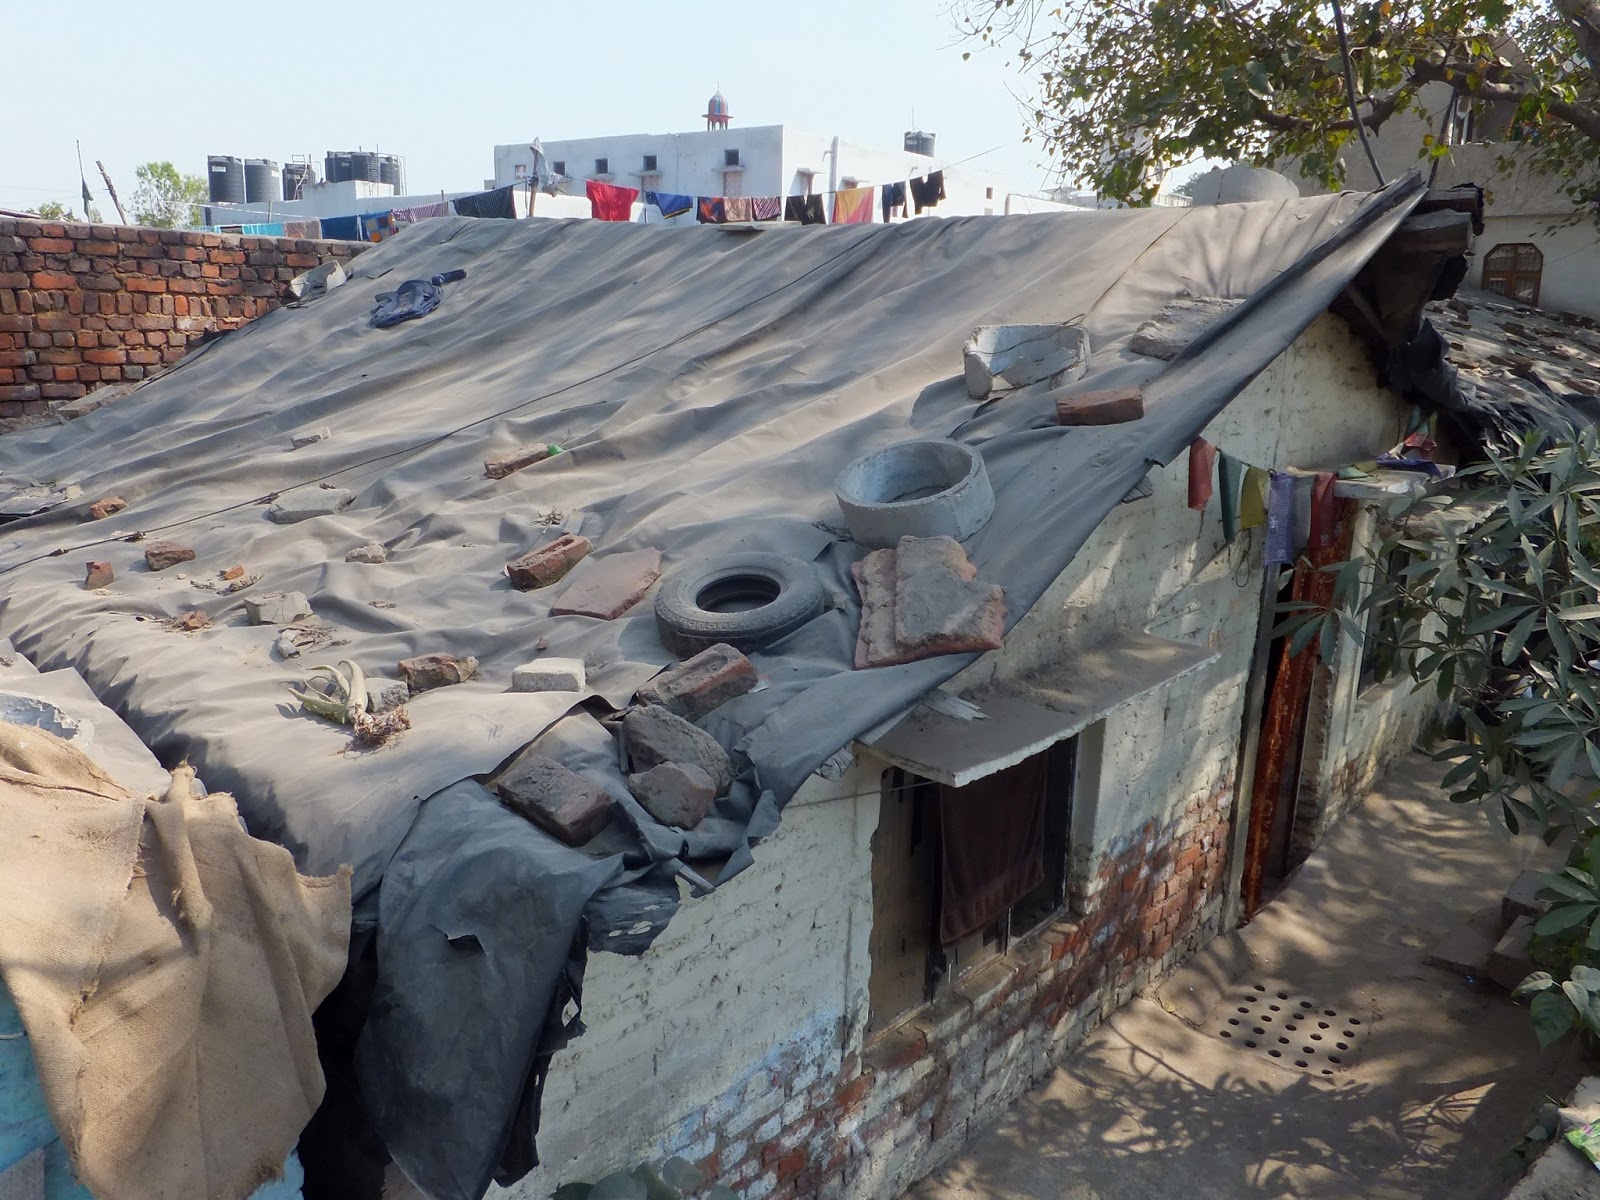 крыша покрытая брезентом и заваленная тротуарной мусором и шинами